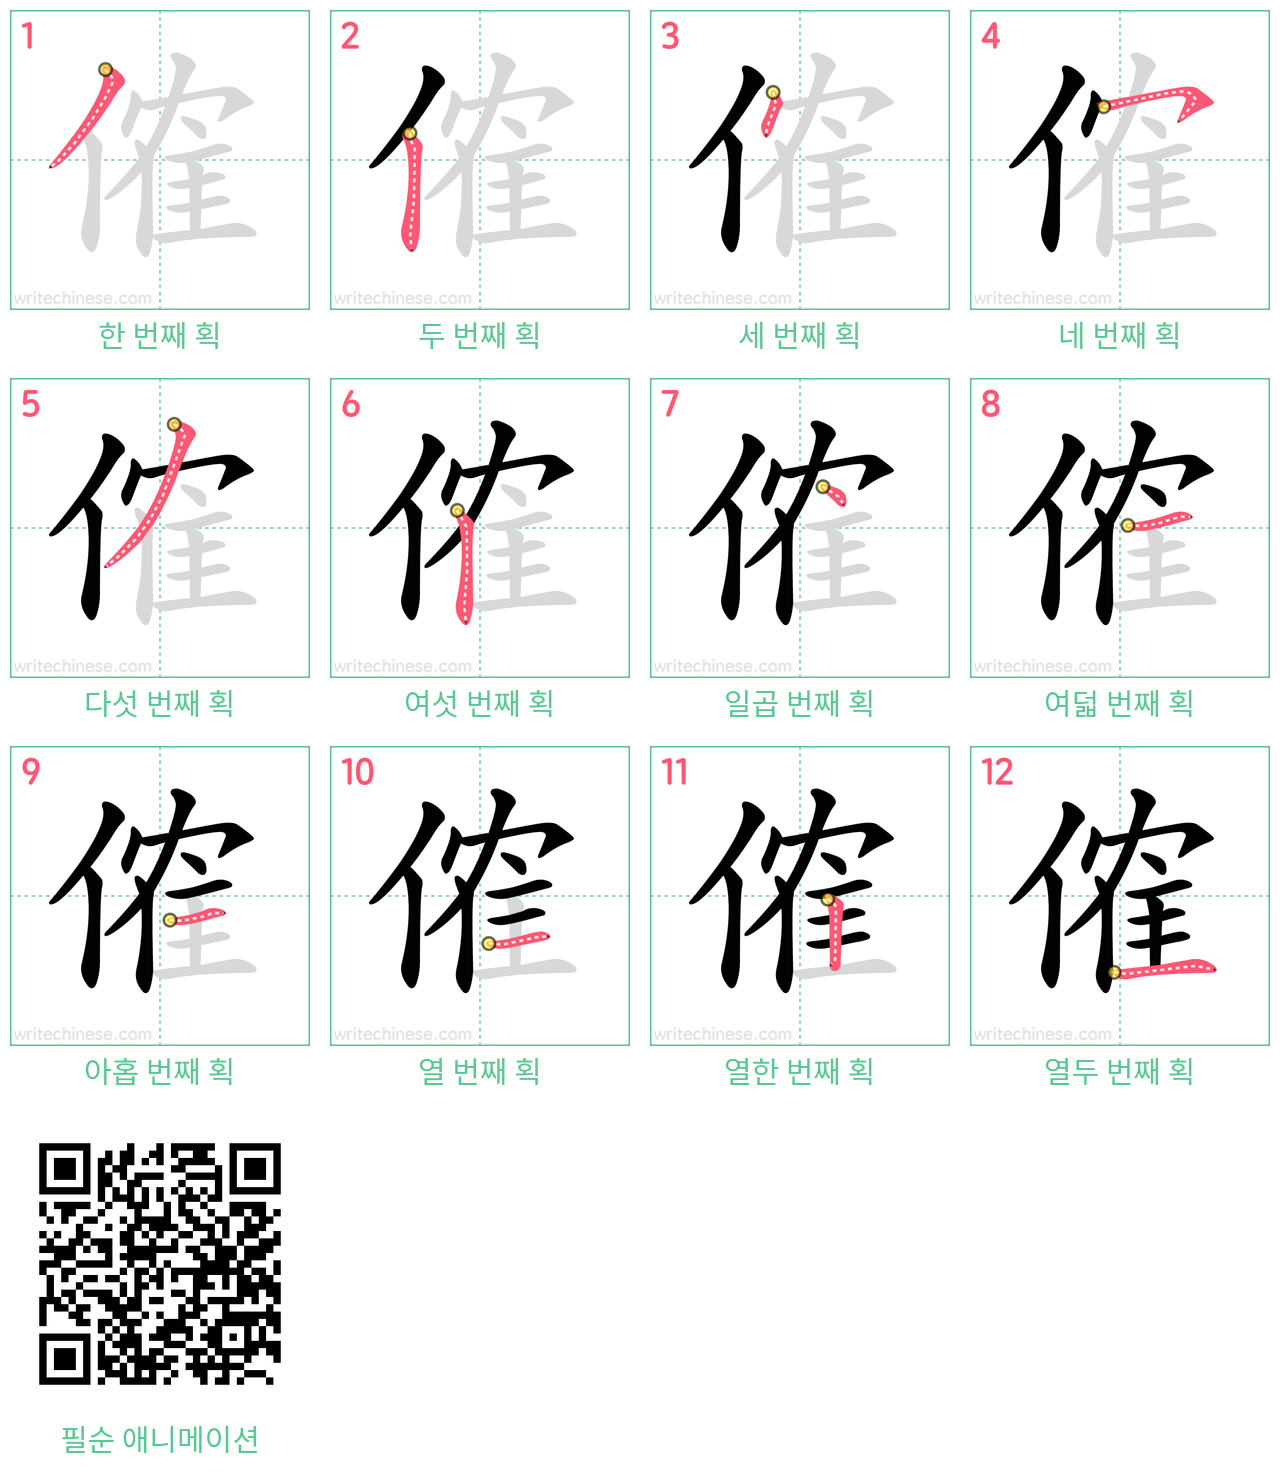 傕 step-by-step stroke order diagrams